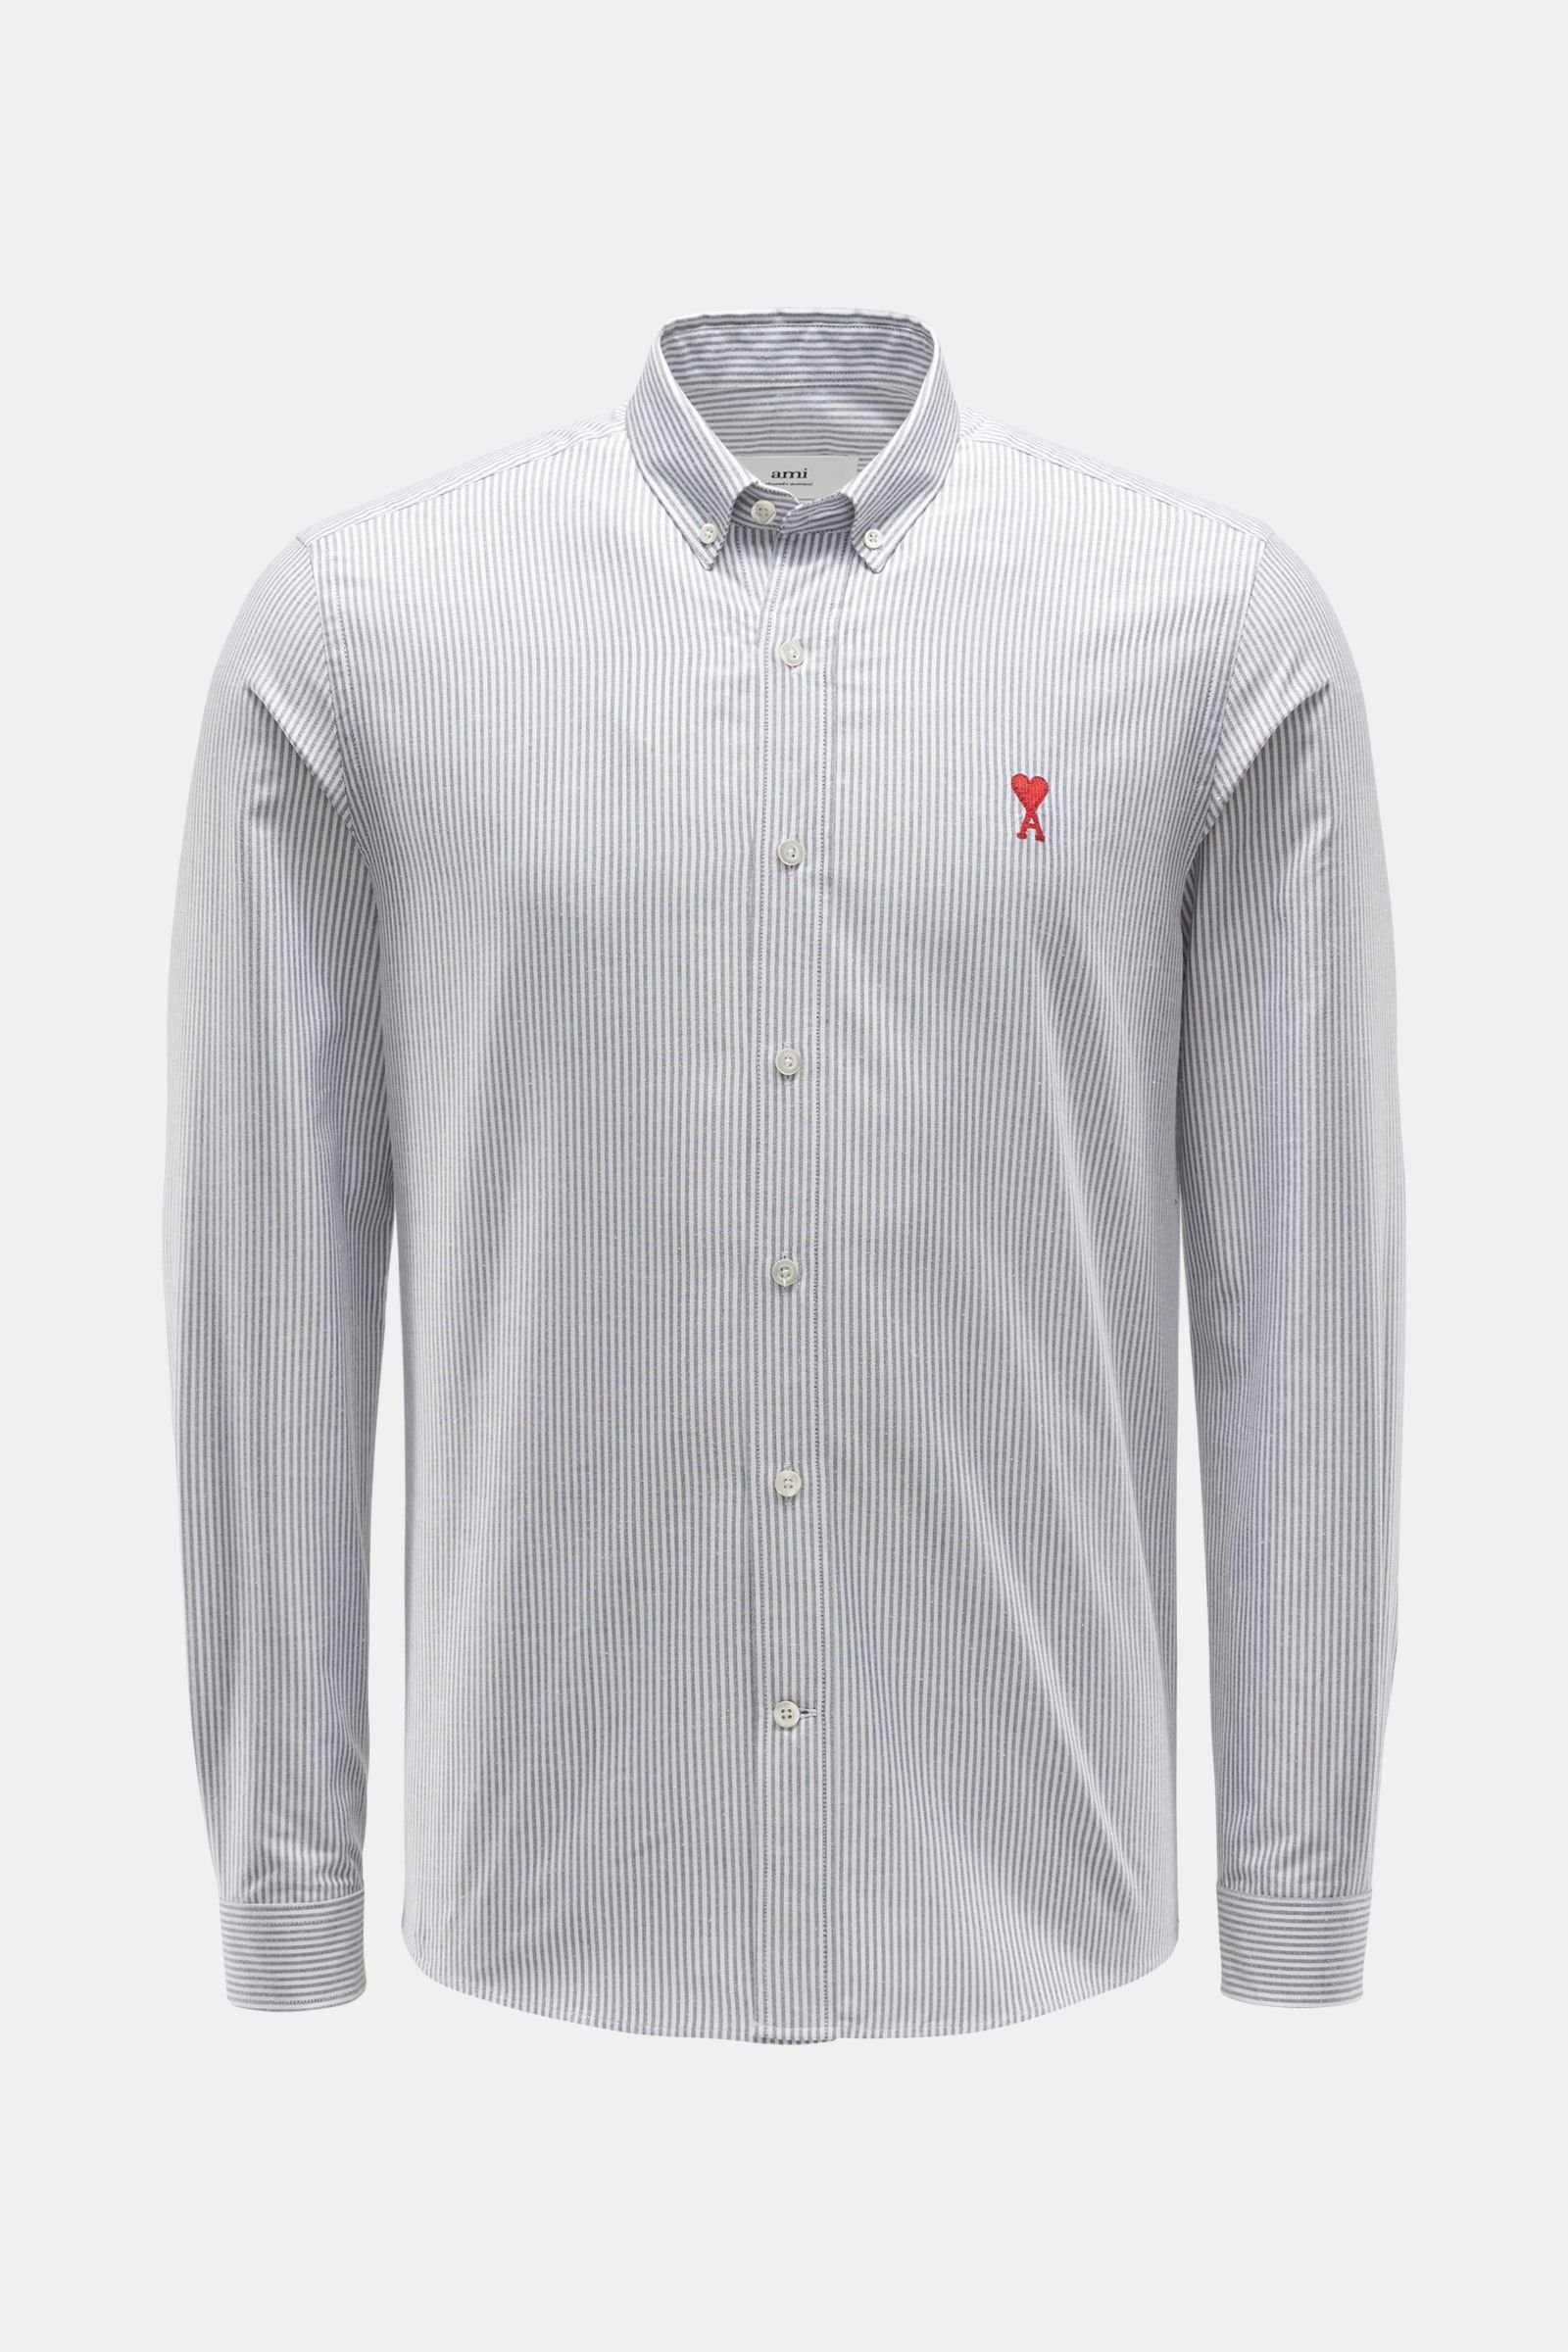 Oxfordhemd Button-Down-Kragen schwarz/weiß gestreift